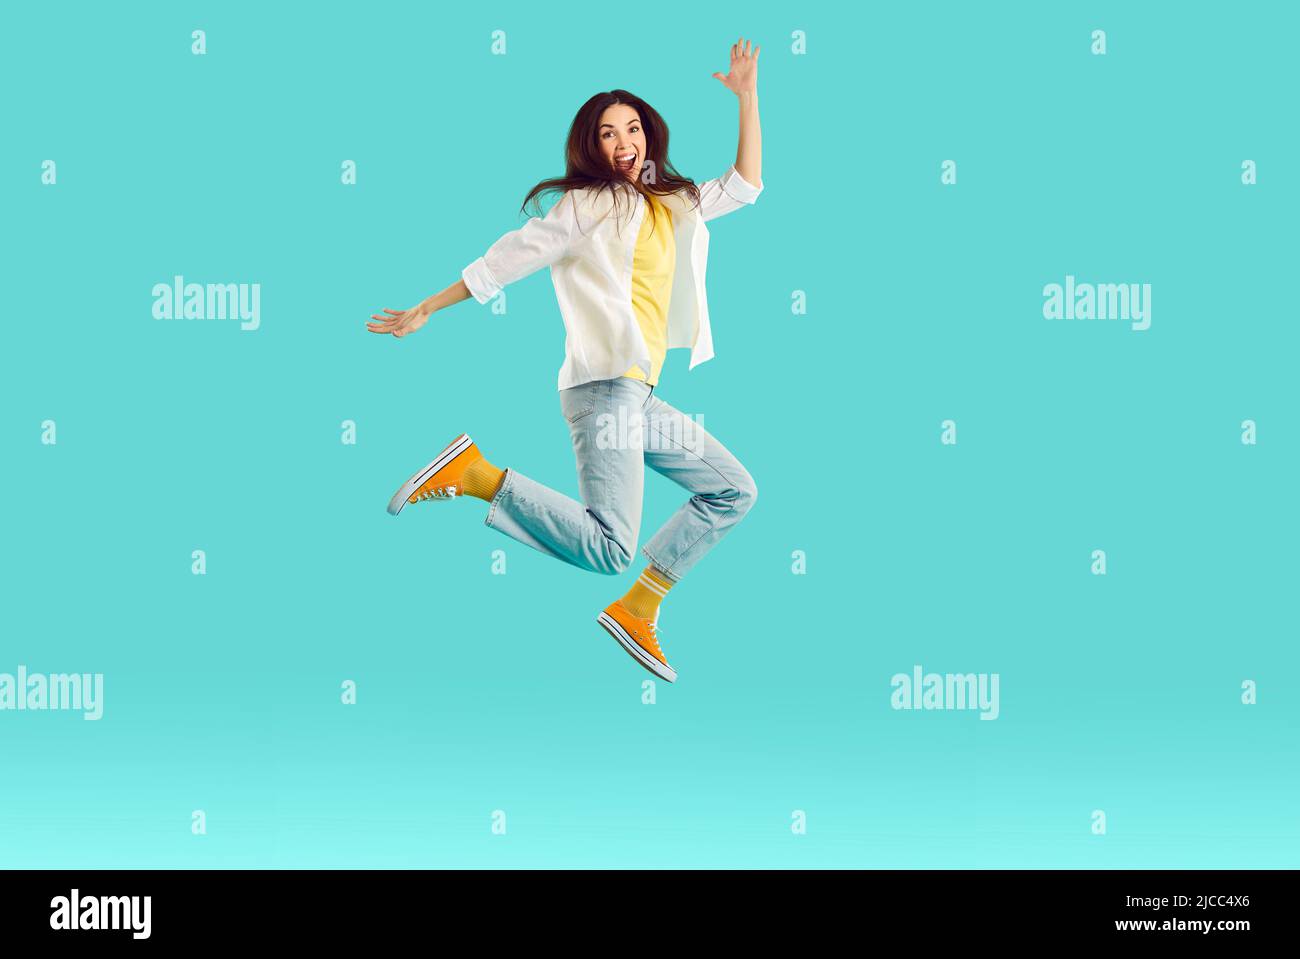 Fröhlich aufgeregt junge Frau mit Spaß und Herumtollen springen hoch auf hellblauem Hintergrund. Stockfoto